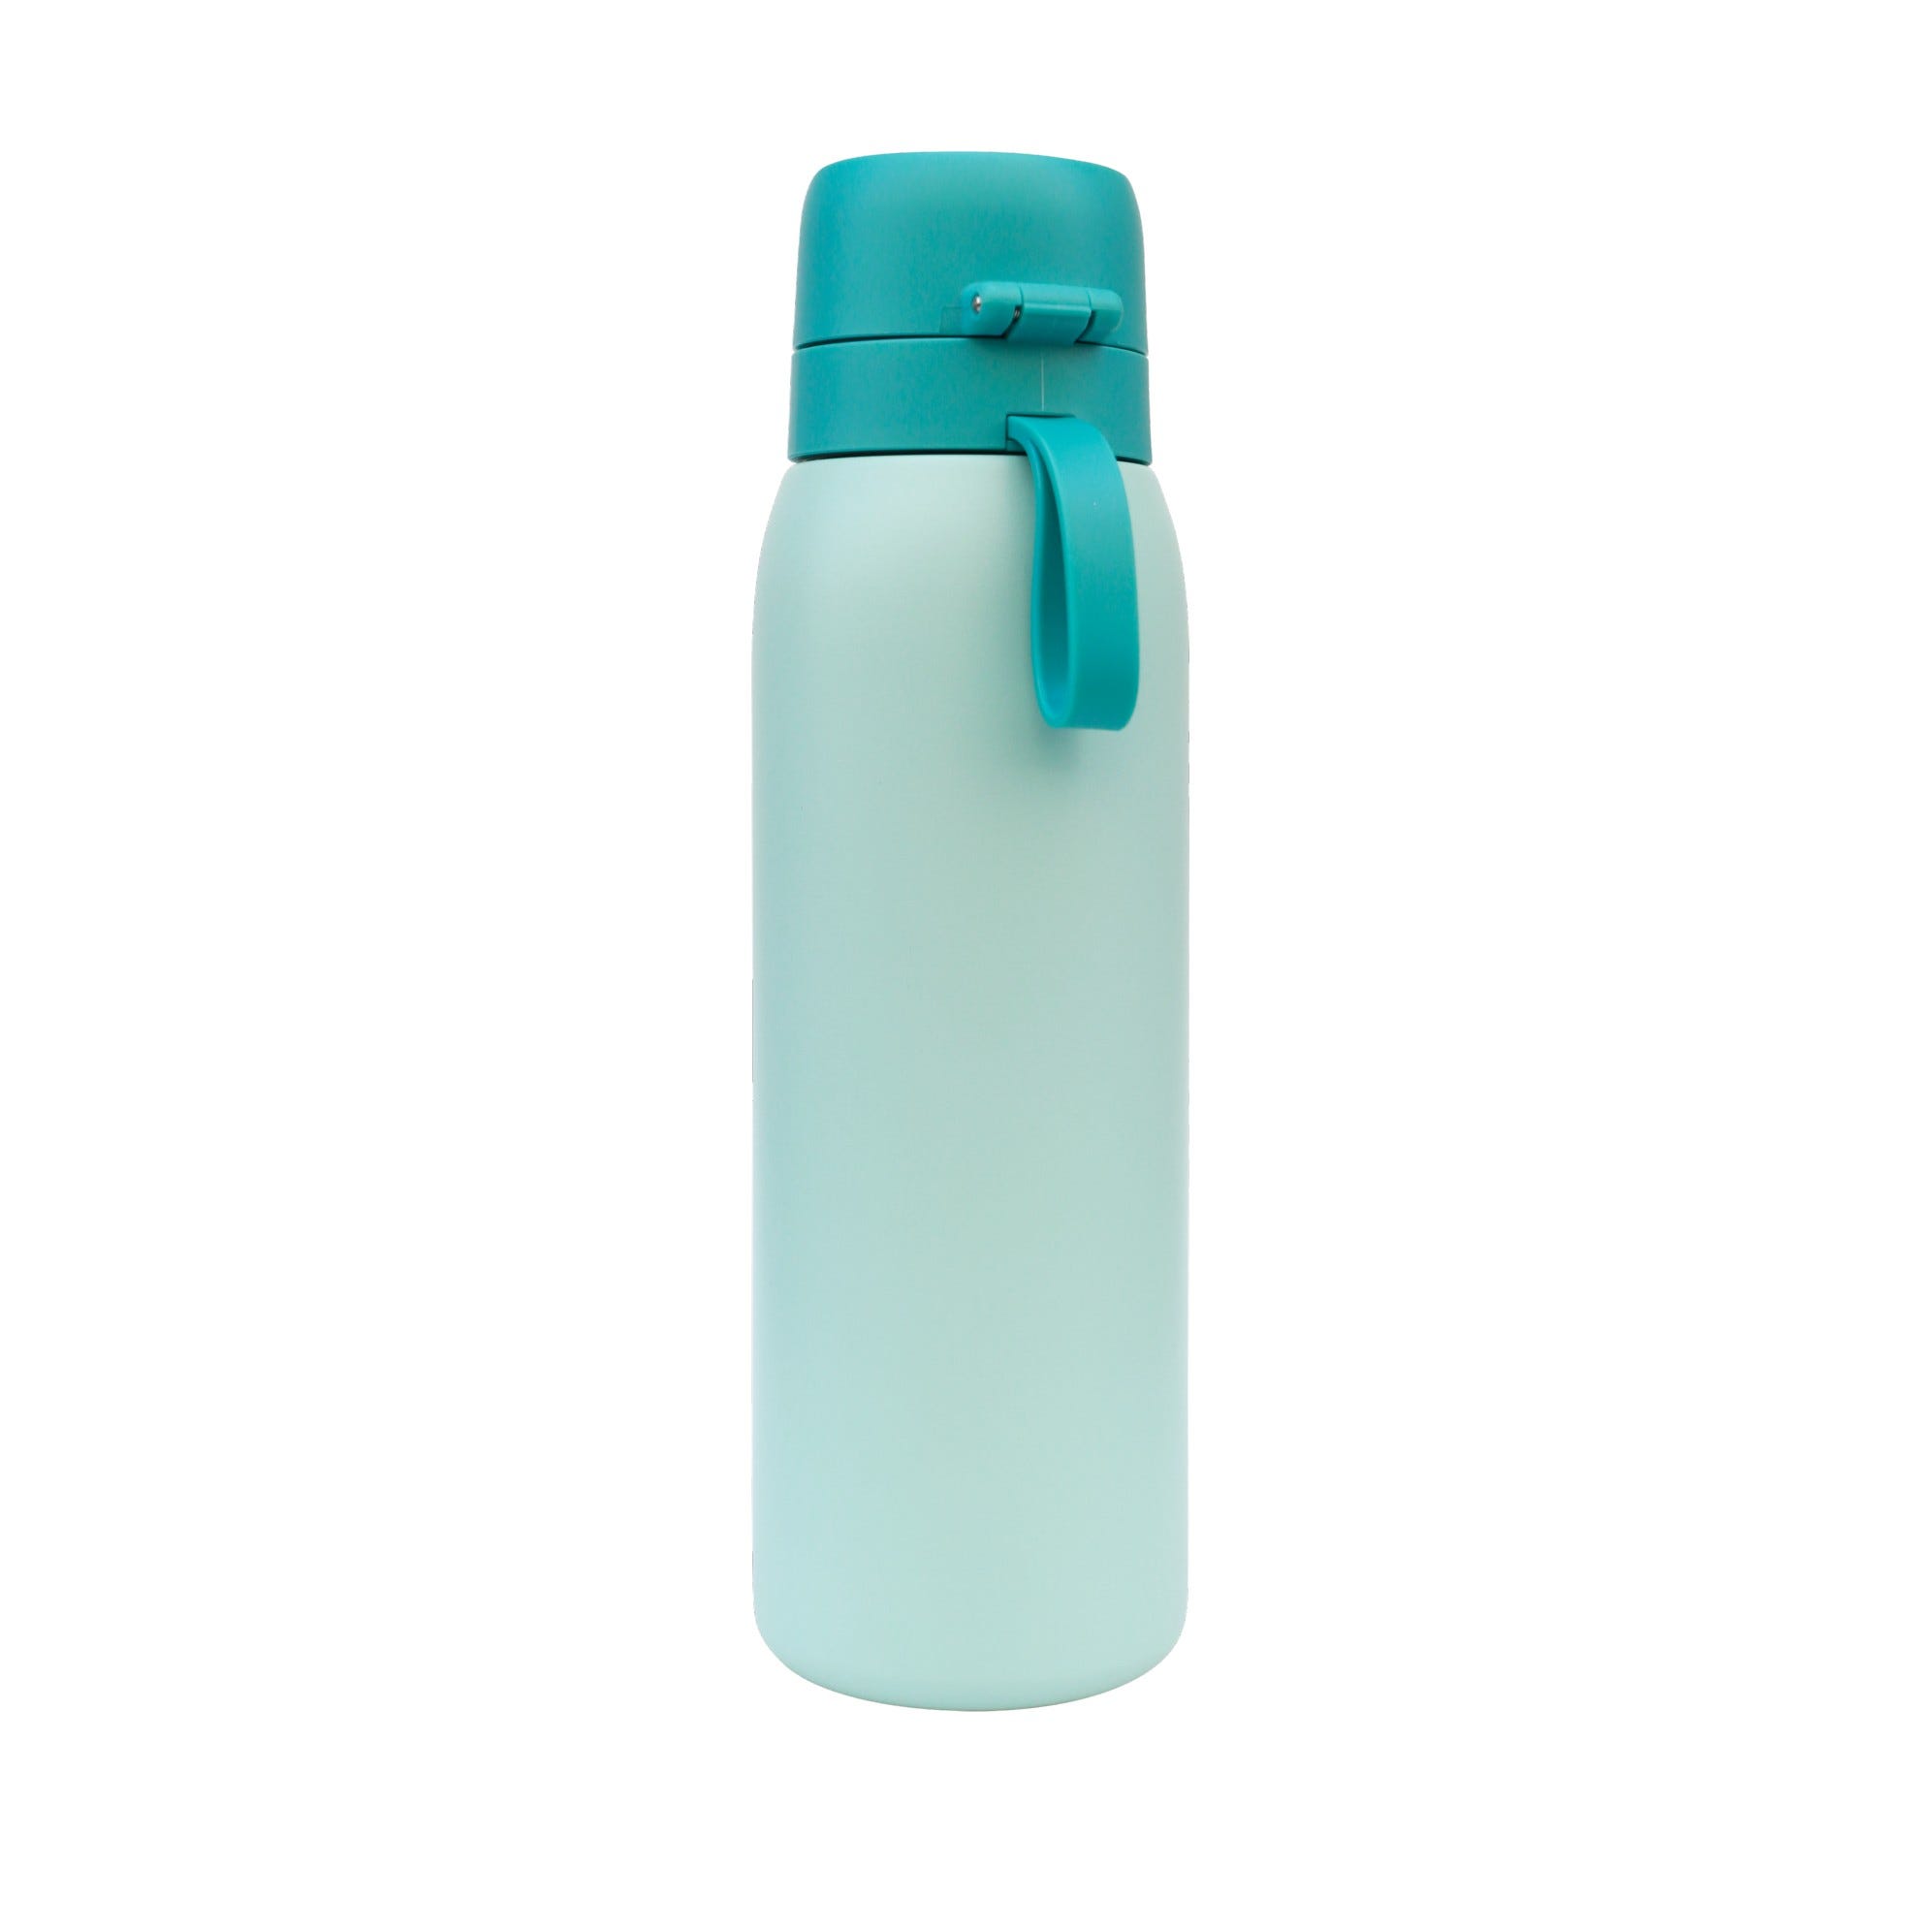 TAPP Water BottlePro I Borraccia filtrante +80 contaminanti. Bottiglia BPA  free e riutilizzabile di 750 ml. Bottiglia chiusura ermetica. Borraccia dep